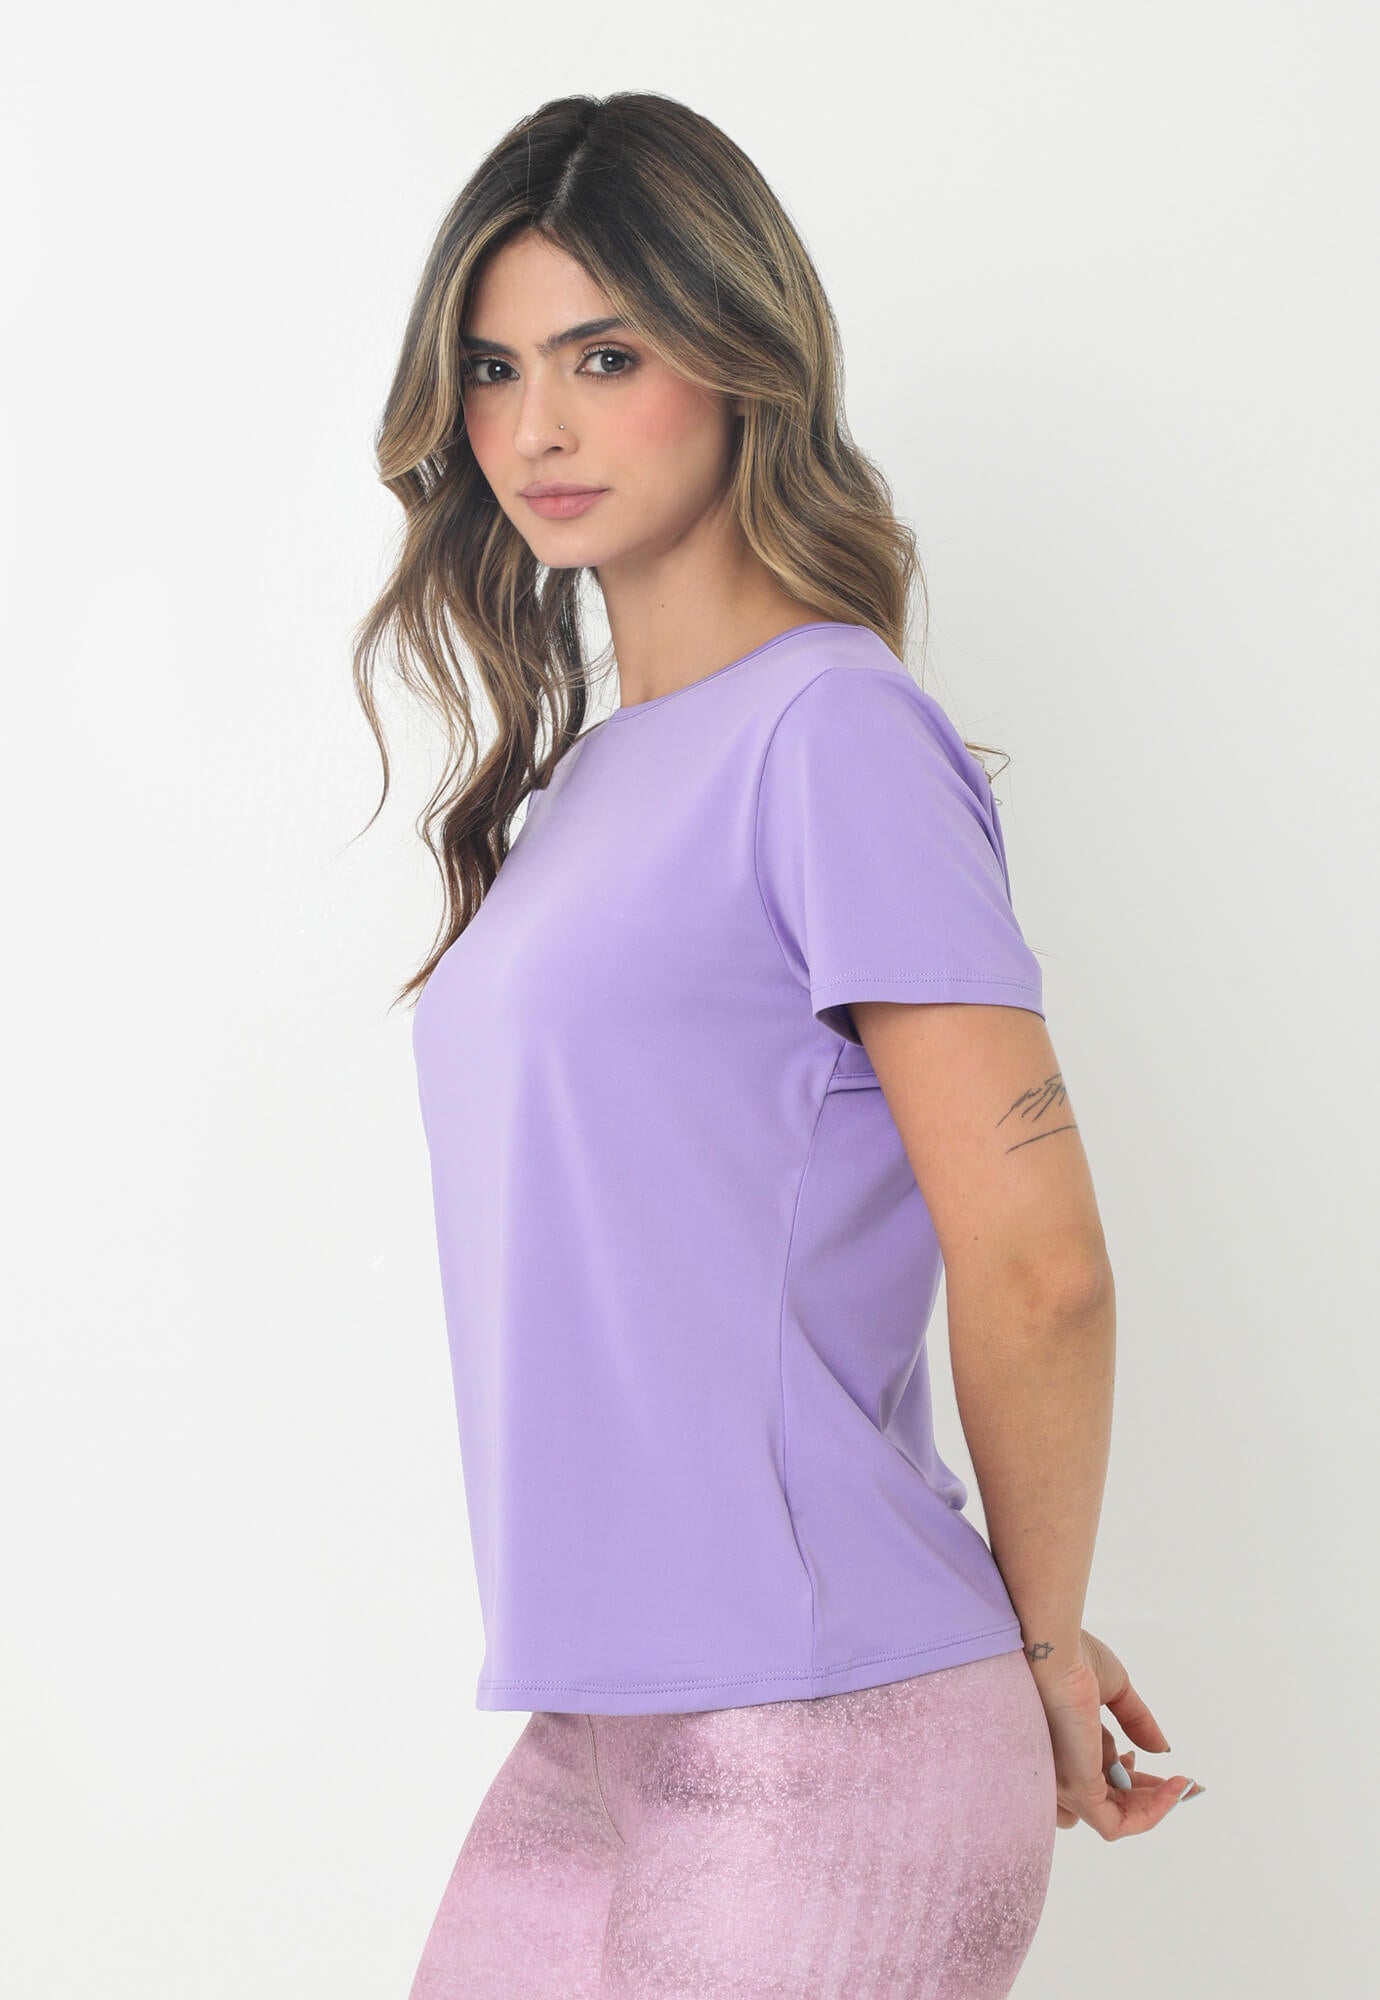 Camiseta deportiva morada lavanda manga corta con abertura y corte en espalda para mujer